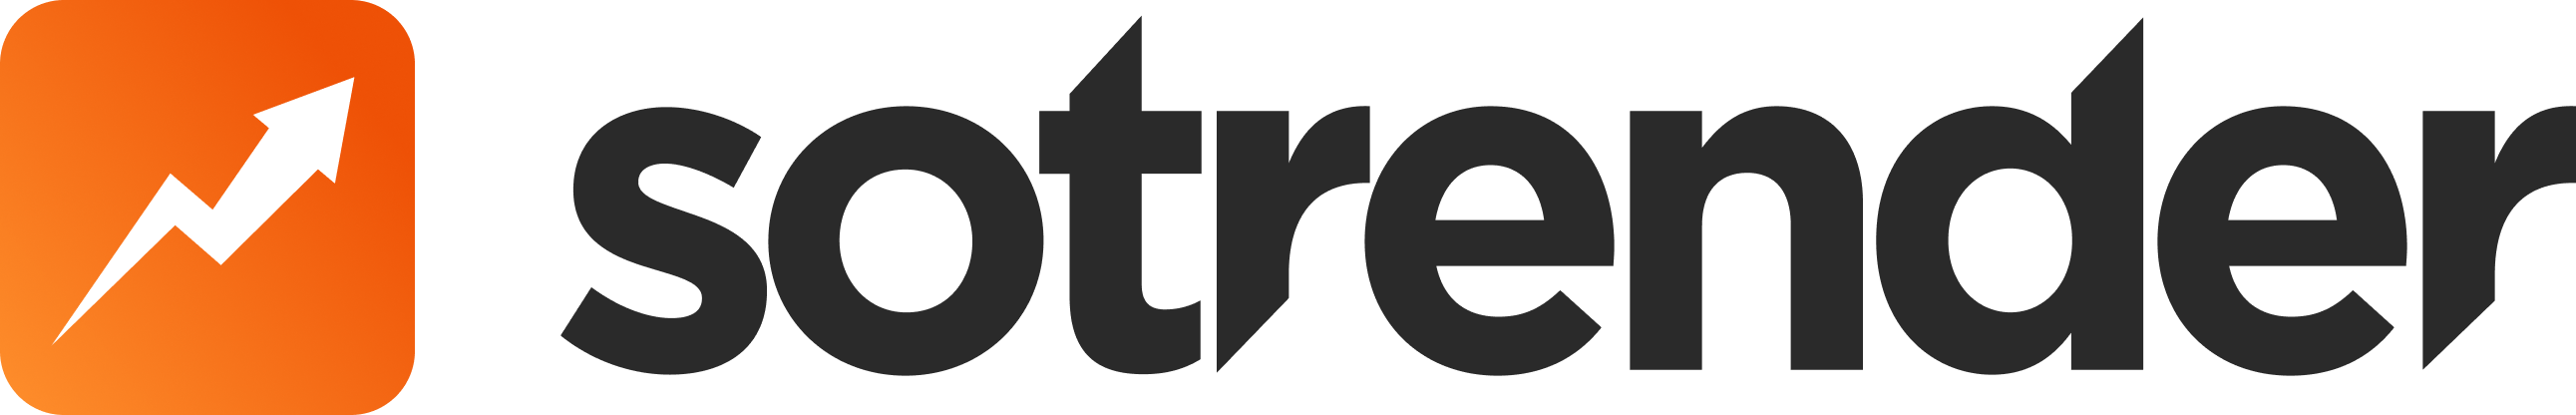 Sotrender logo-1